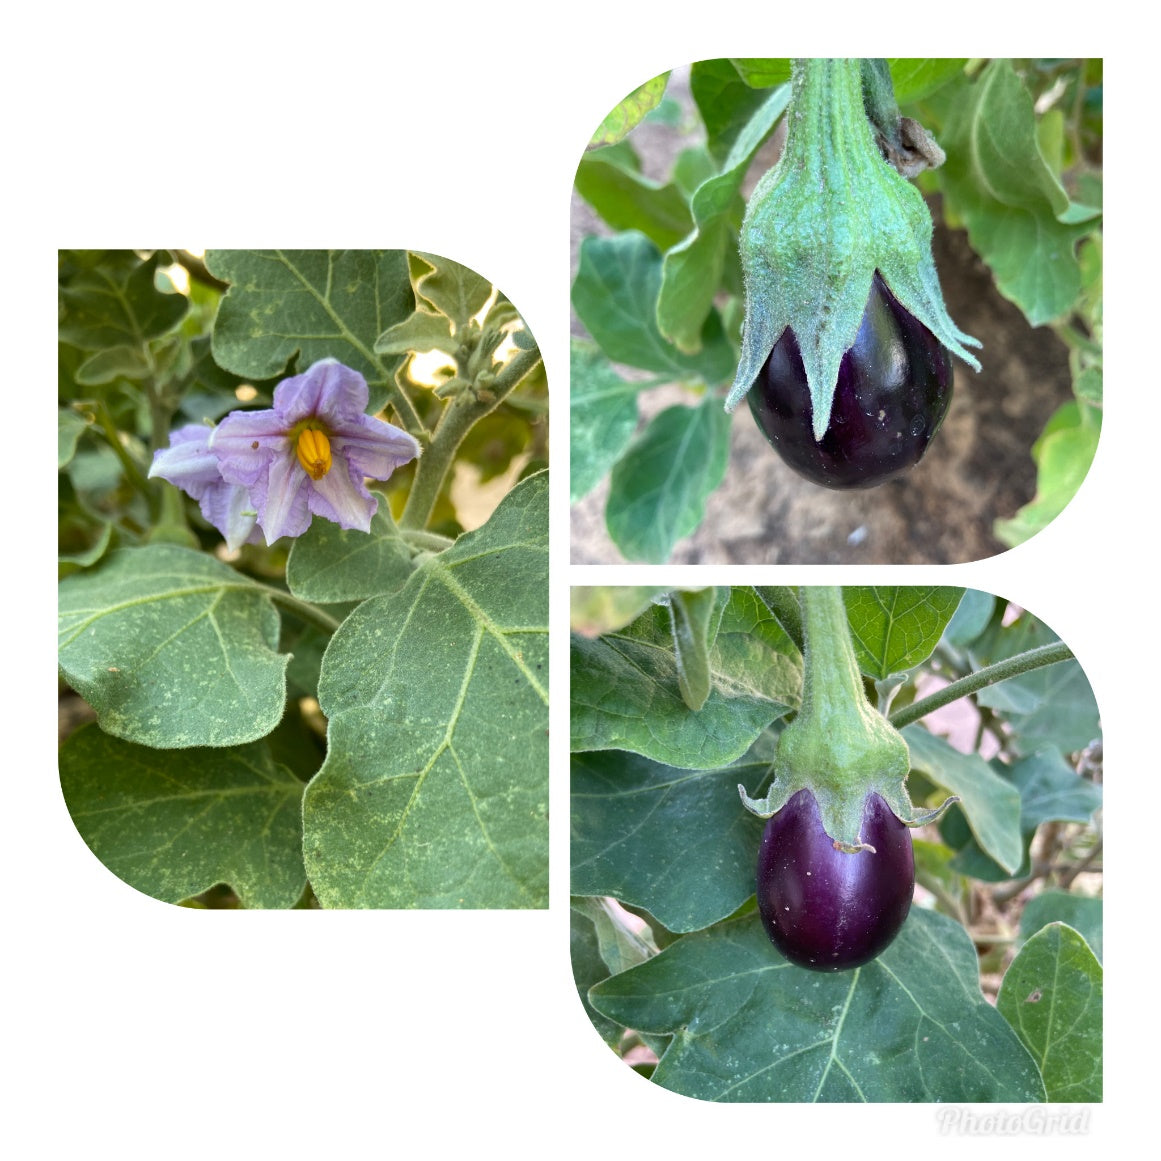 eggplant uae